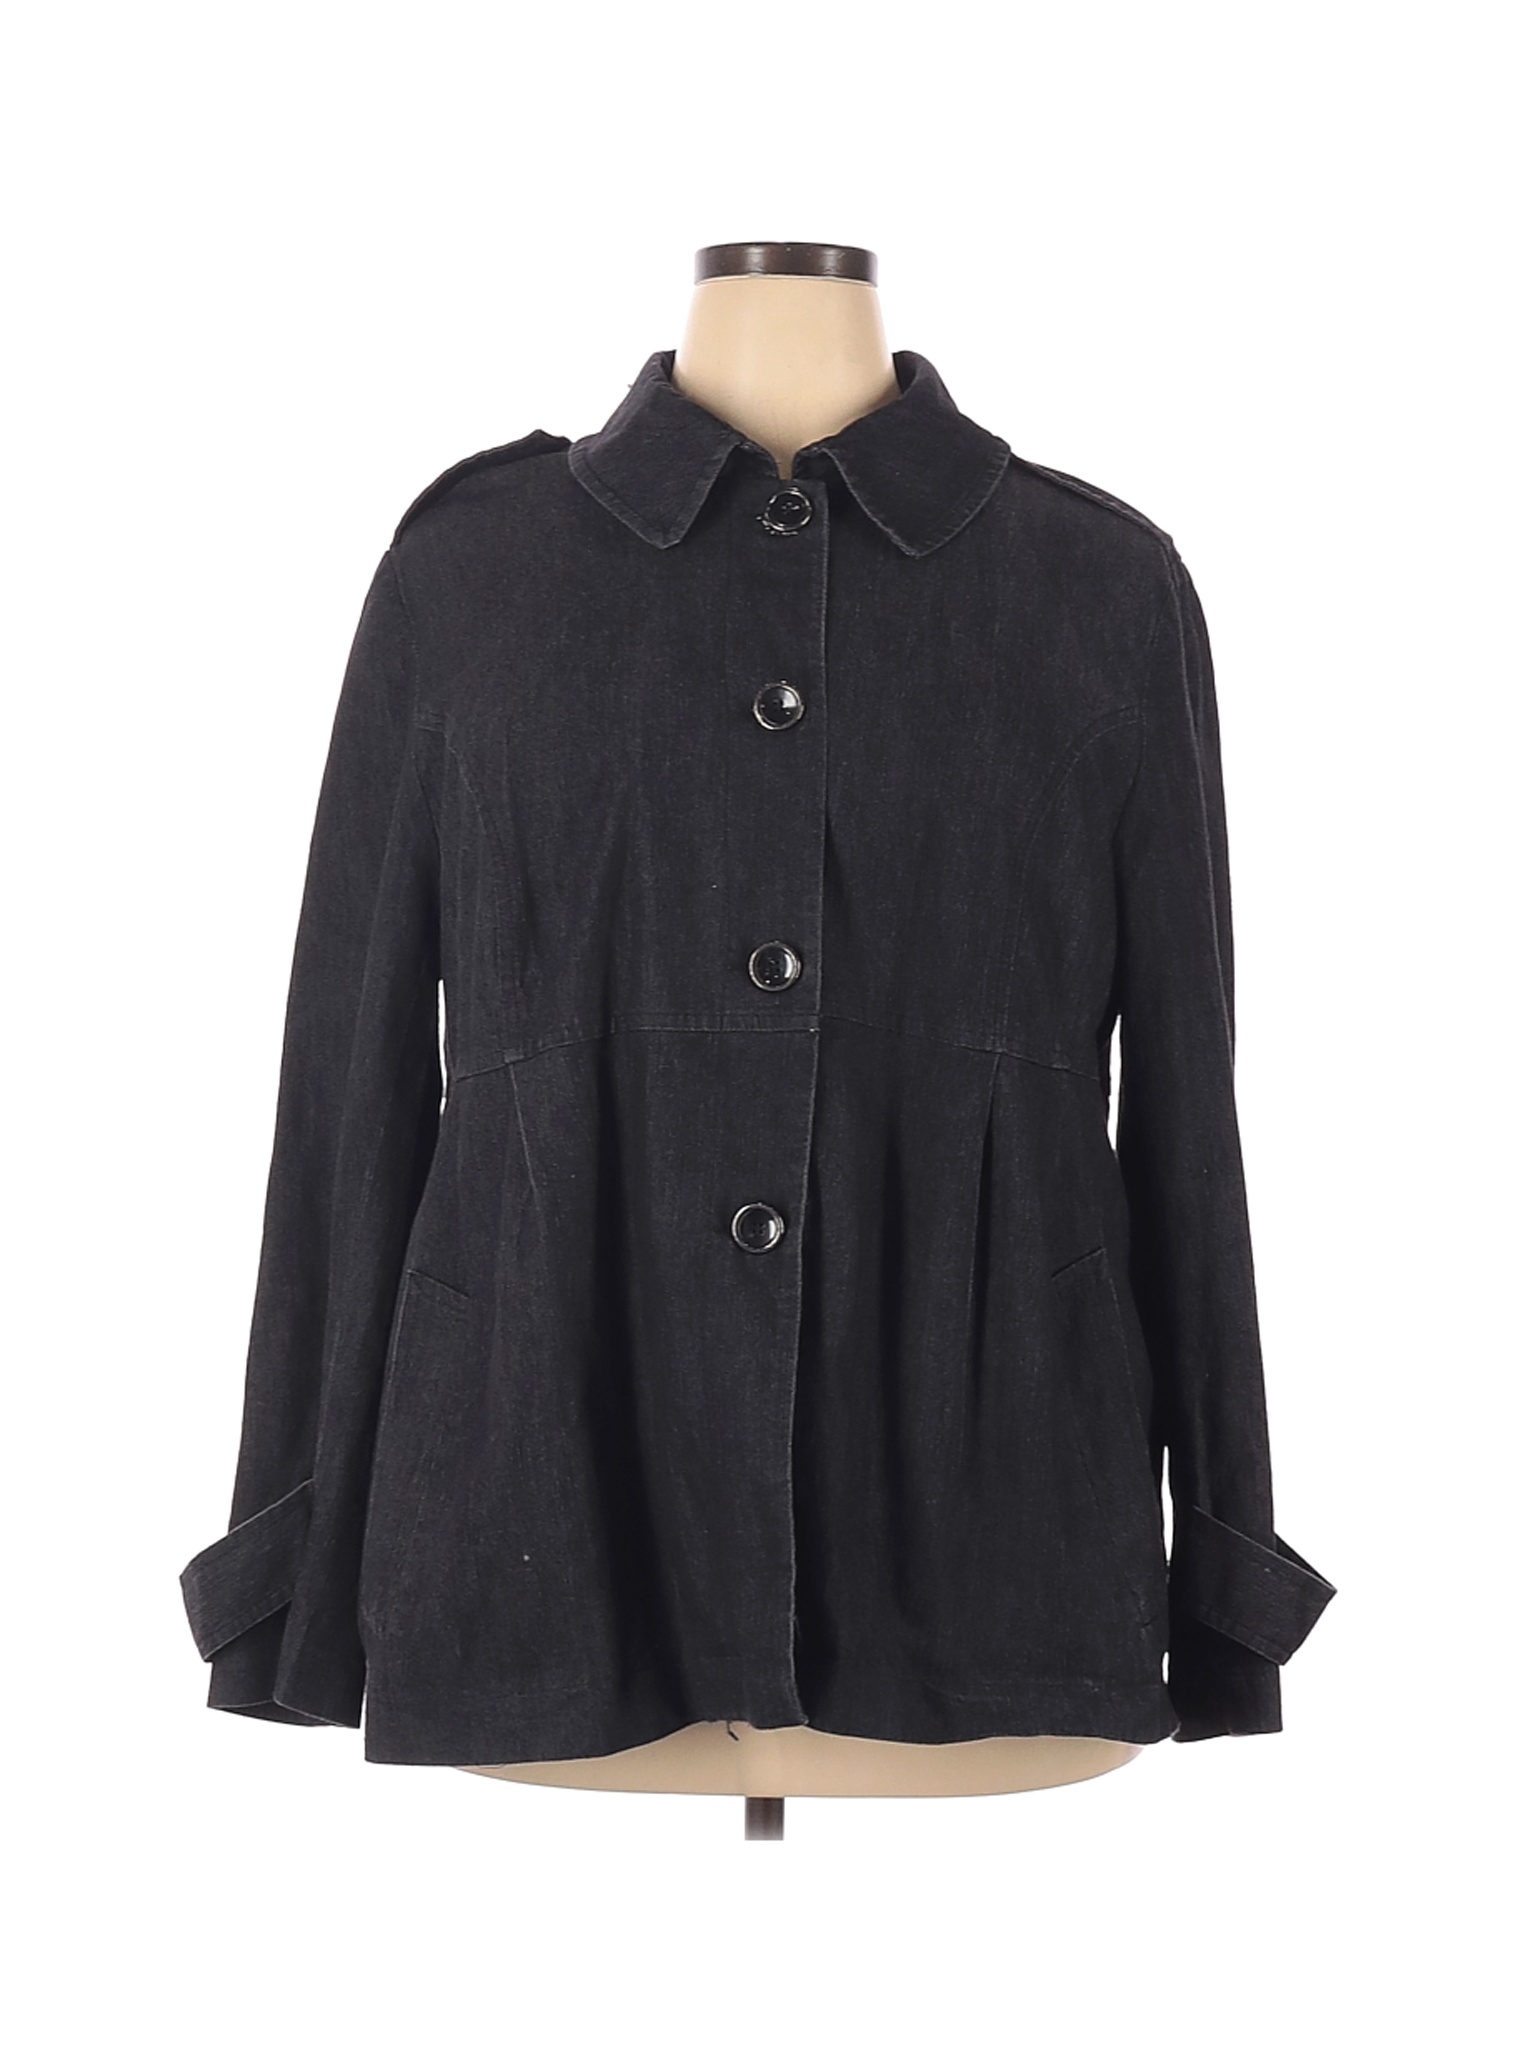 Sandro Sportswear Women Black Jacket 2X Plus | eBay